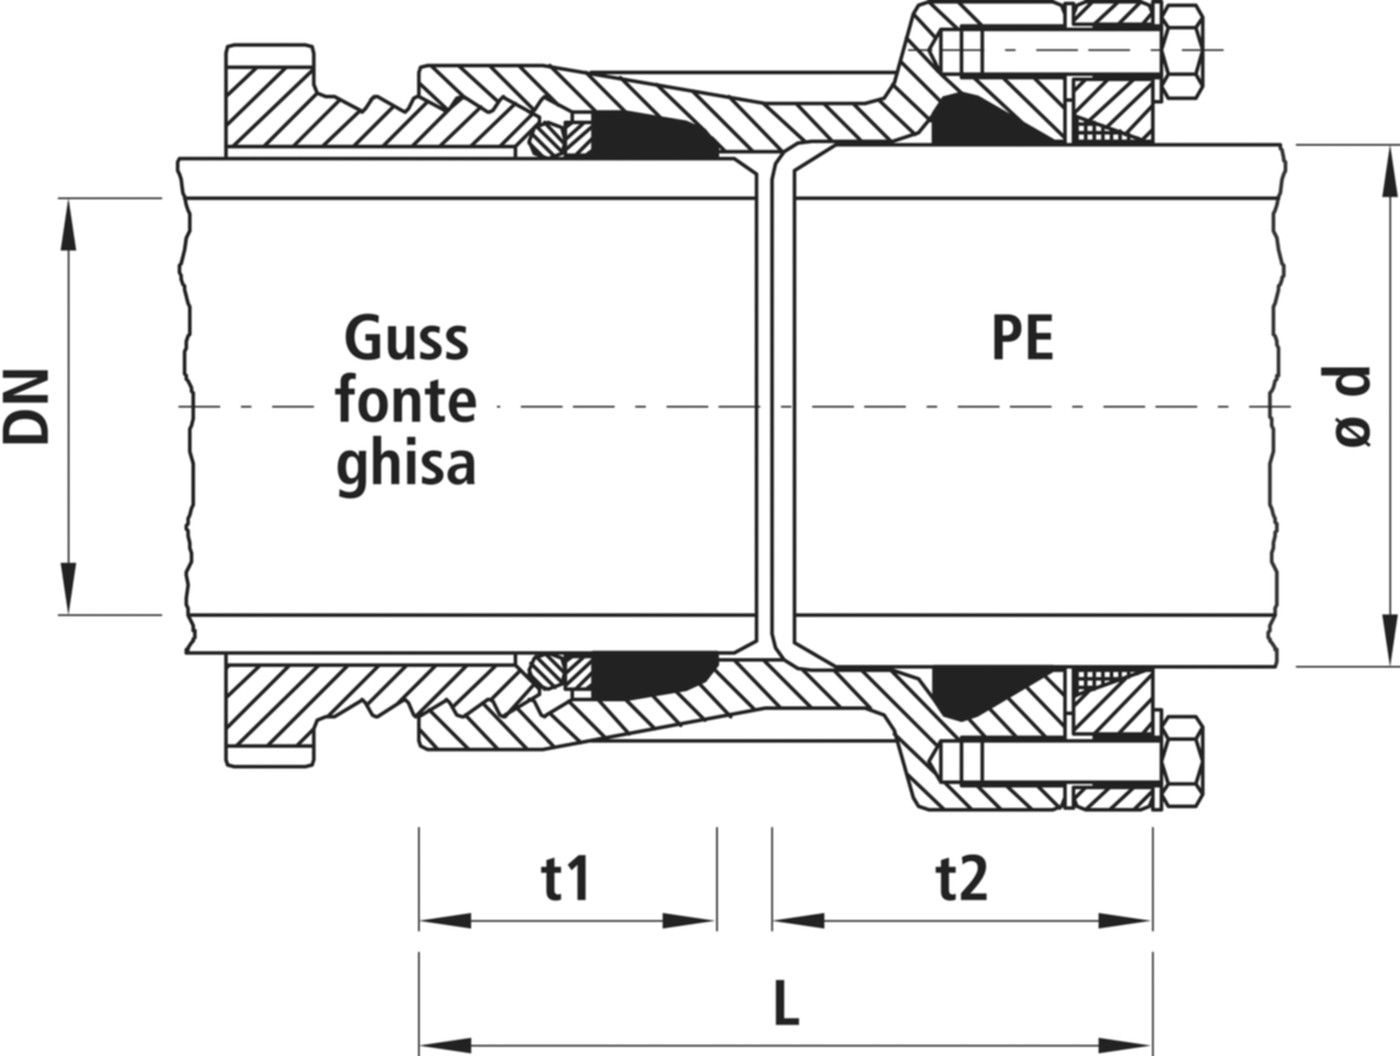 Verbinder Guss/PE, für Wasser 7230 DN 200 / d 225mm - Hawle System 2000